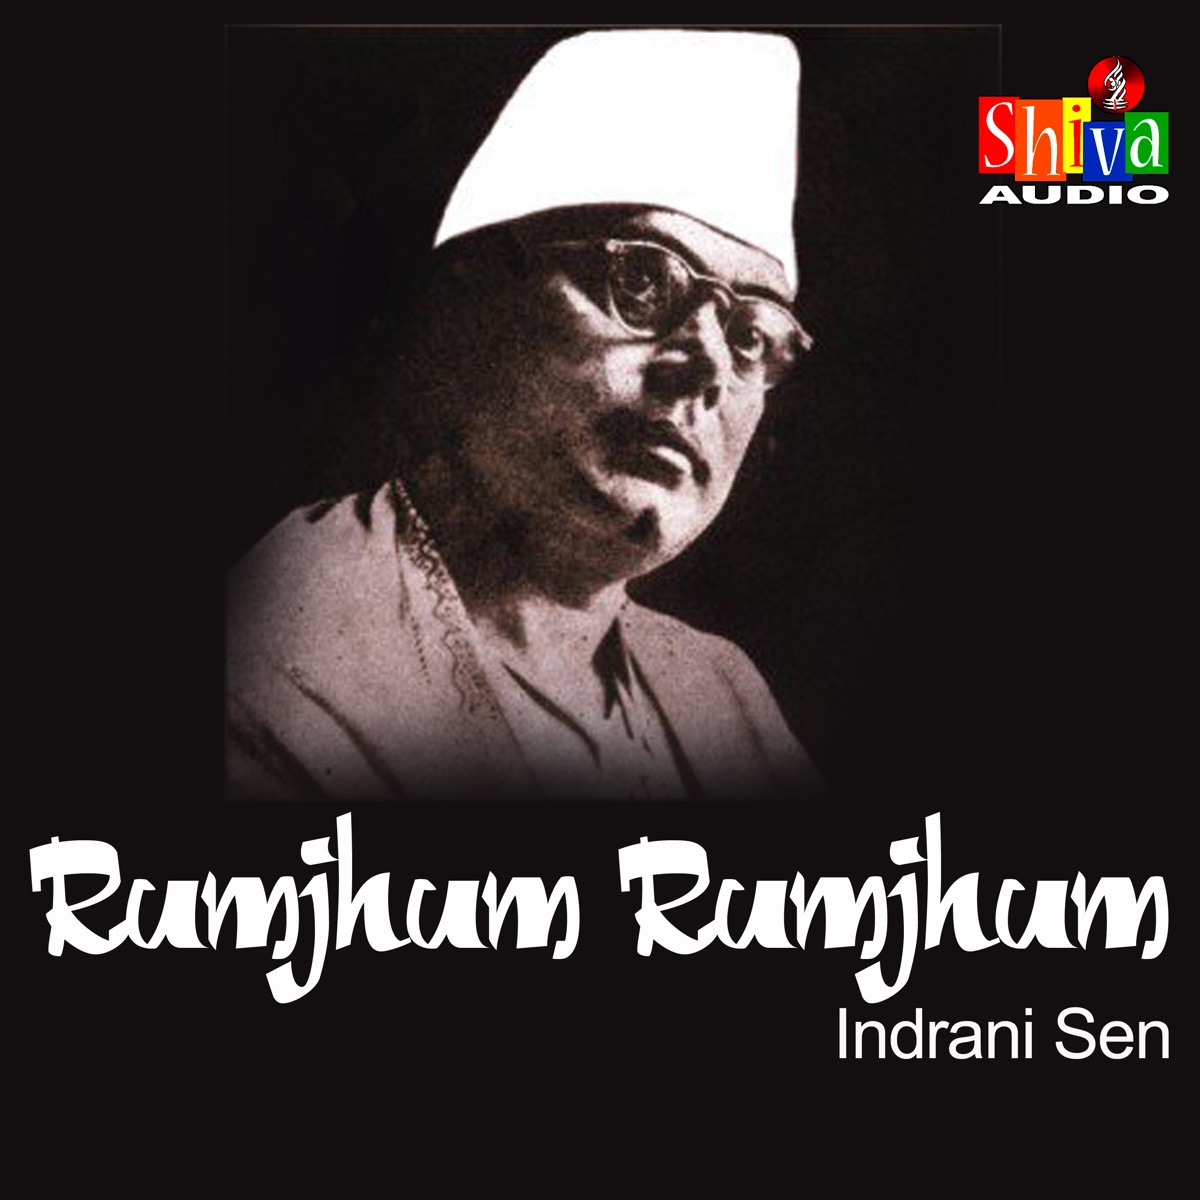 Rumjhum Rumjhum - Single - Album by Indrani Sen - Apple Music